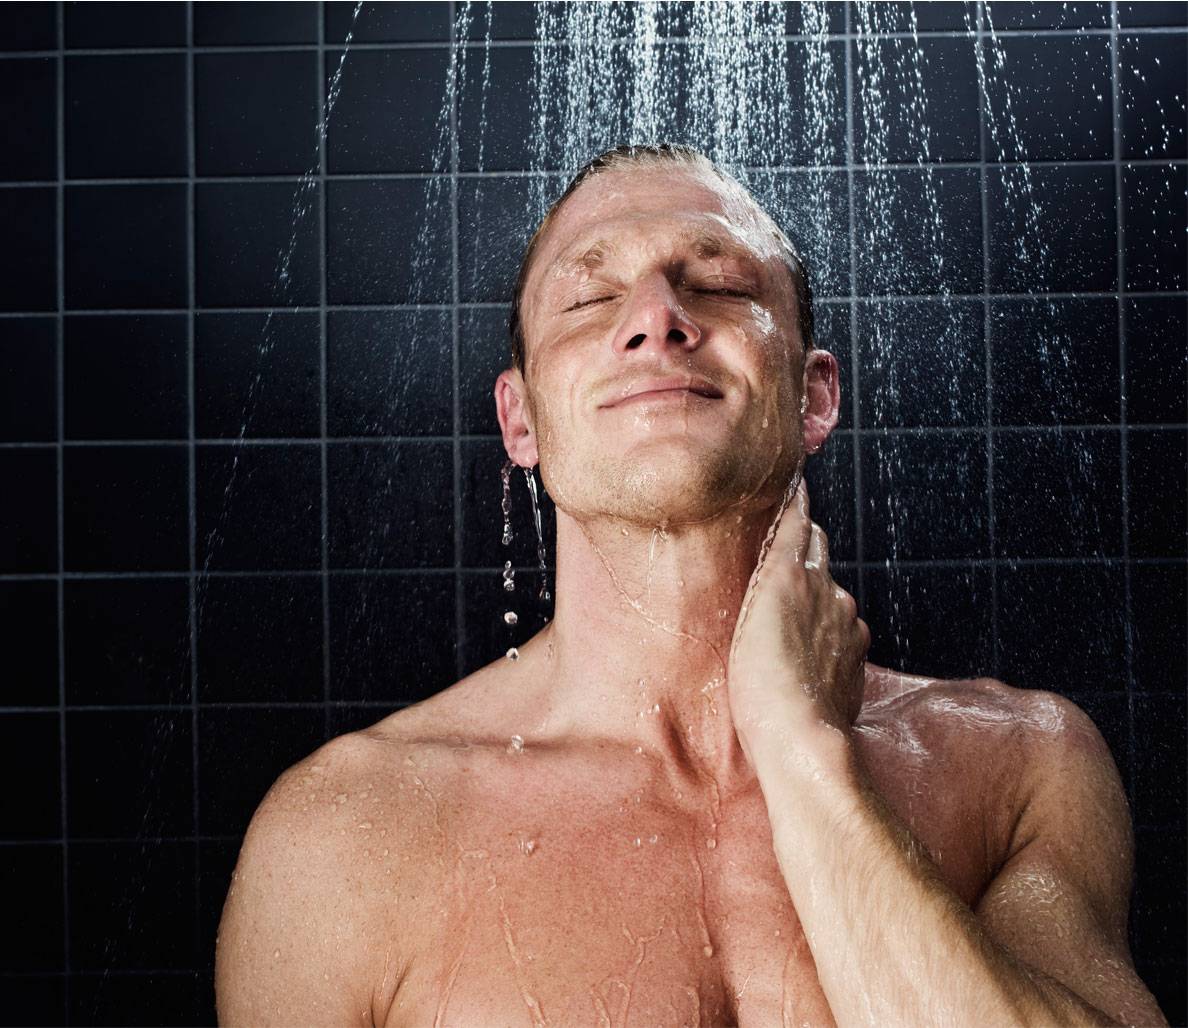 Можно ли после тренировки принимать холодный душ?